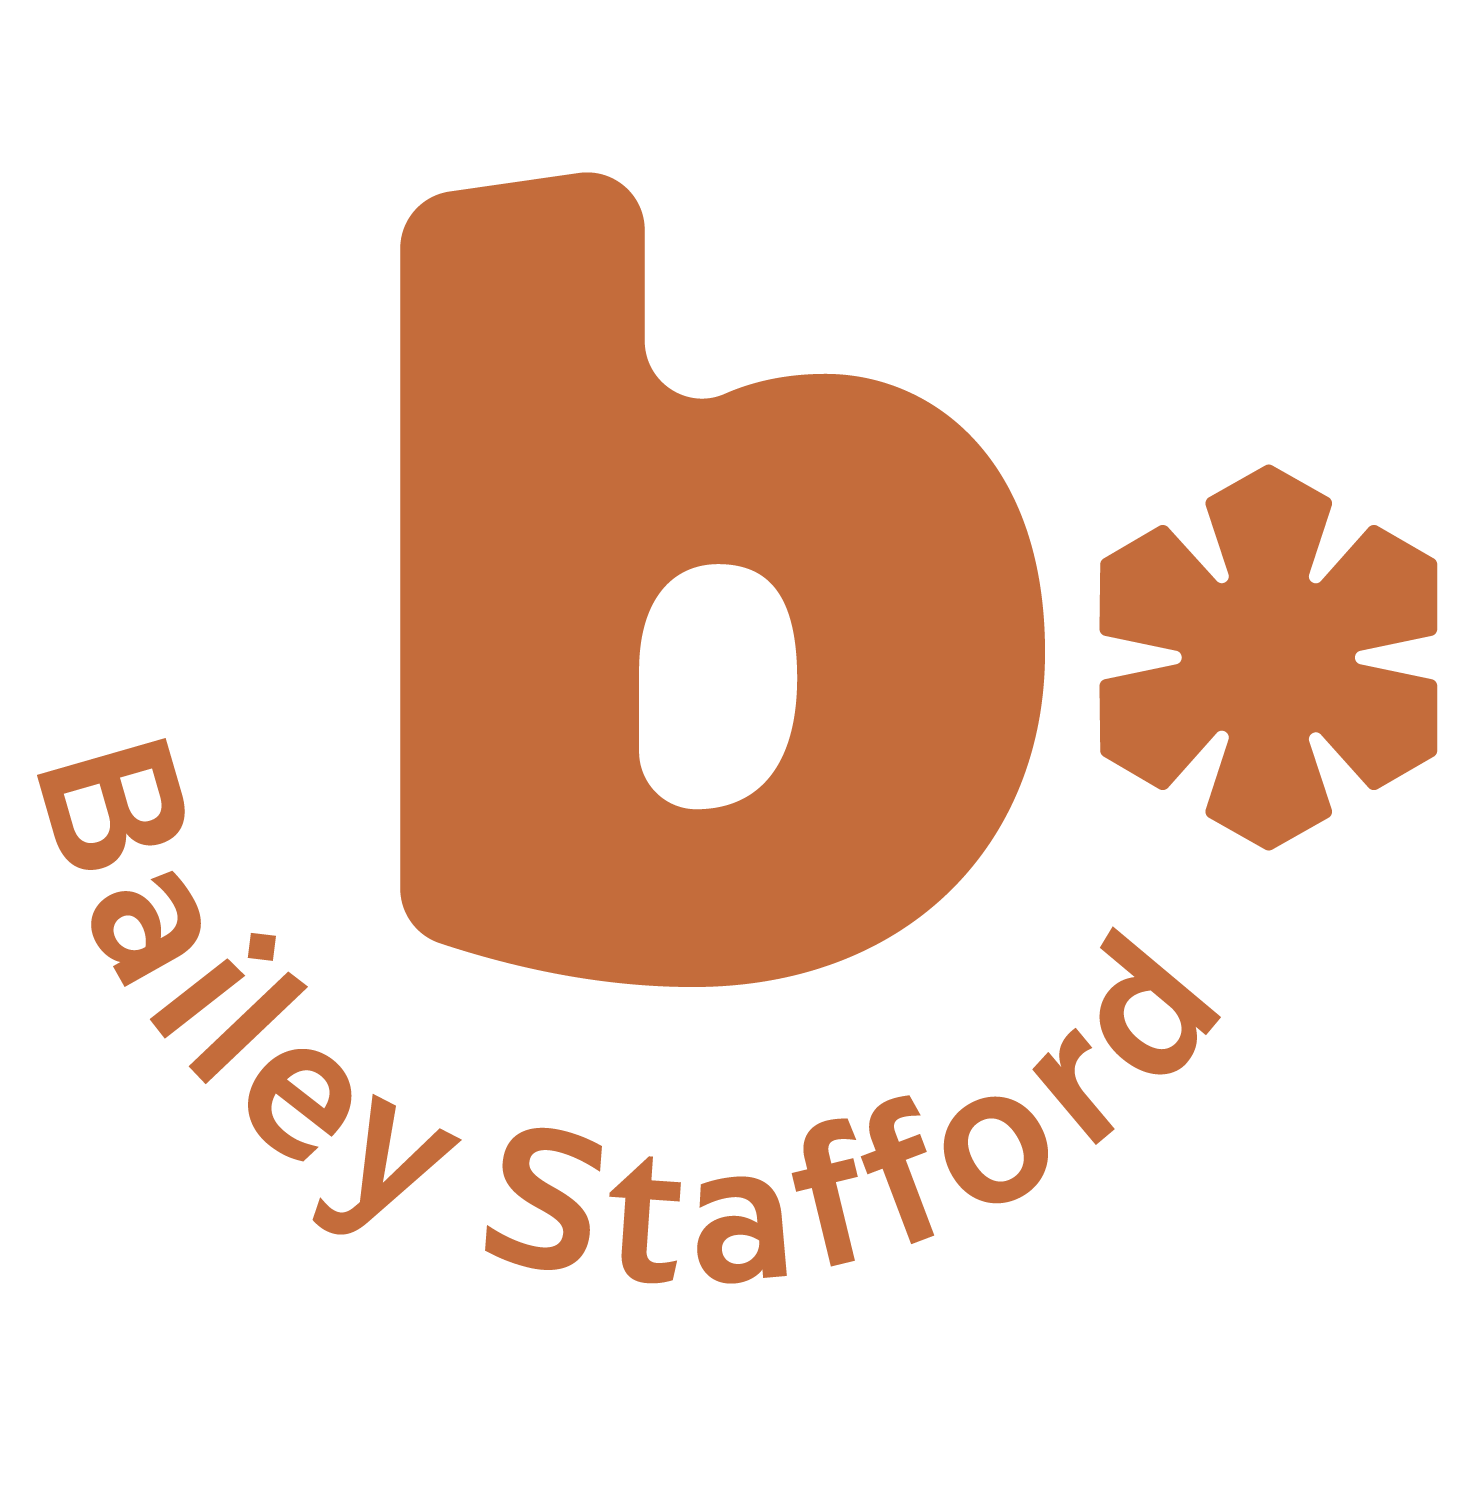 Bailey Stafford